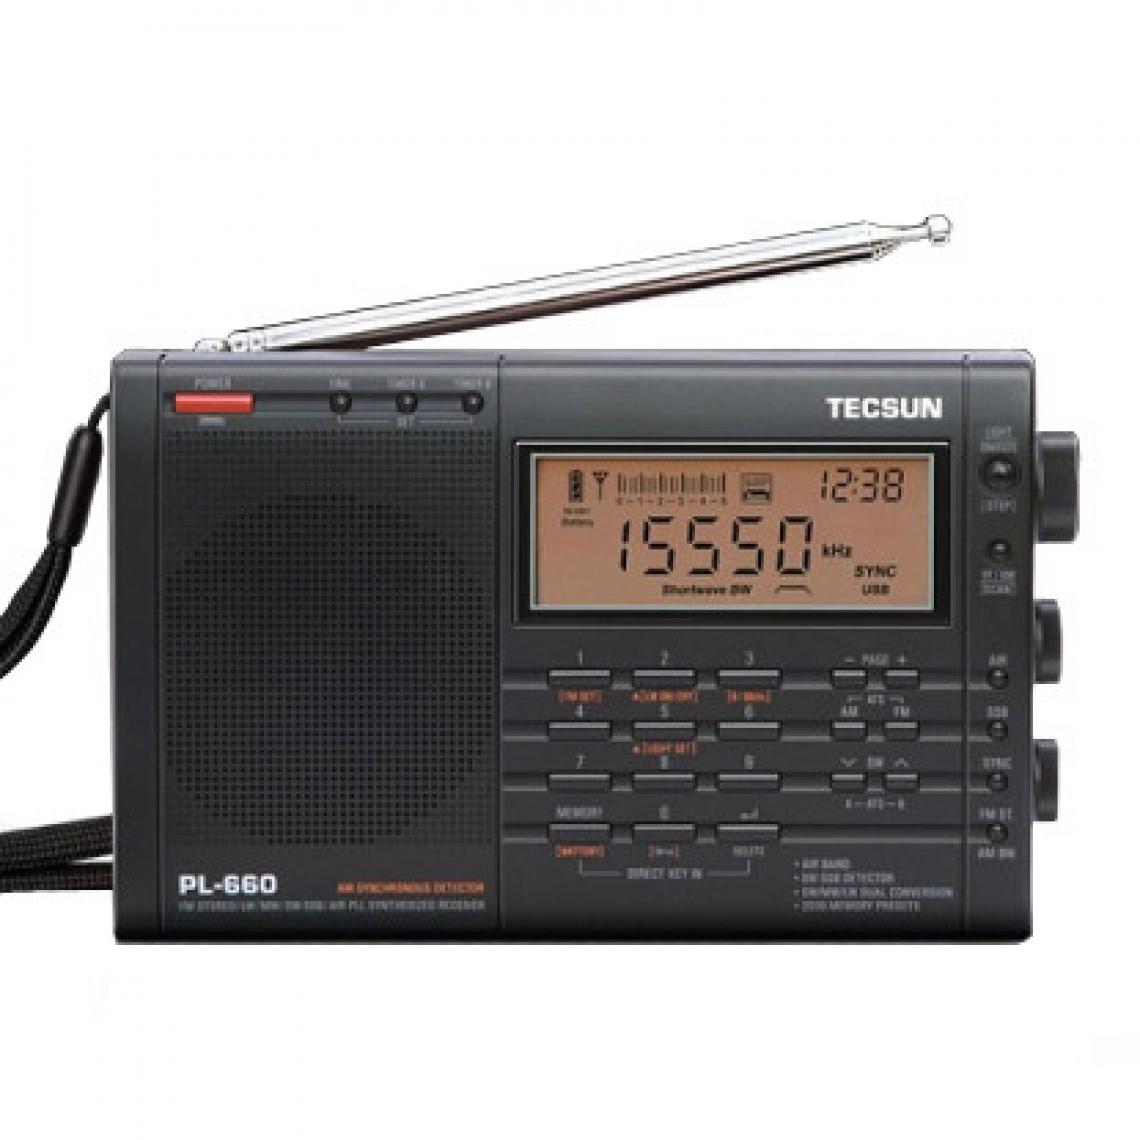 Universal - Radio PLL SSB VHF Récepteur radio à bande d'air FM/MW/SW/LW Récepteur radio à bande d'air - Radio